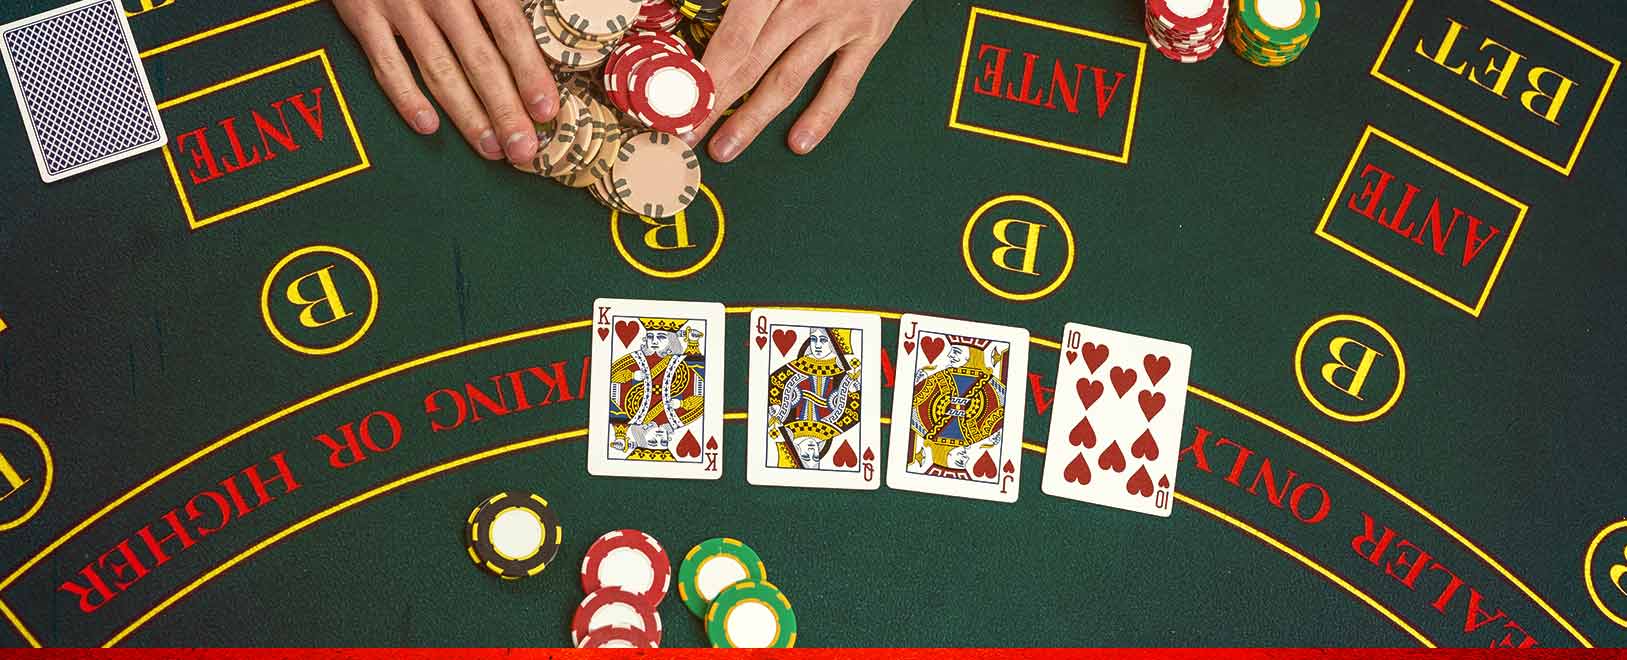 Poker Strategy: Five Reasons to Raise in Online Poker